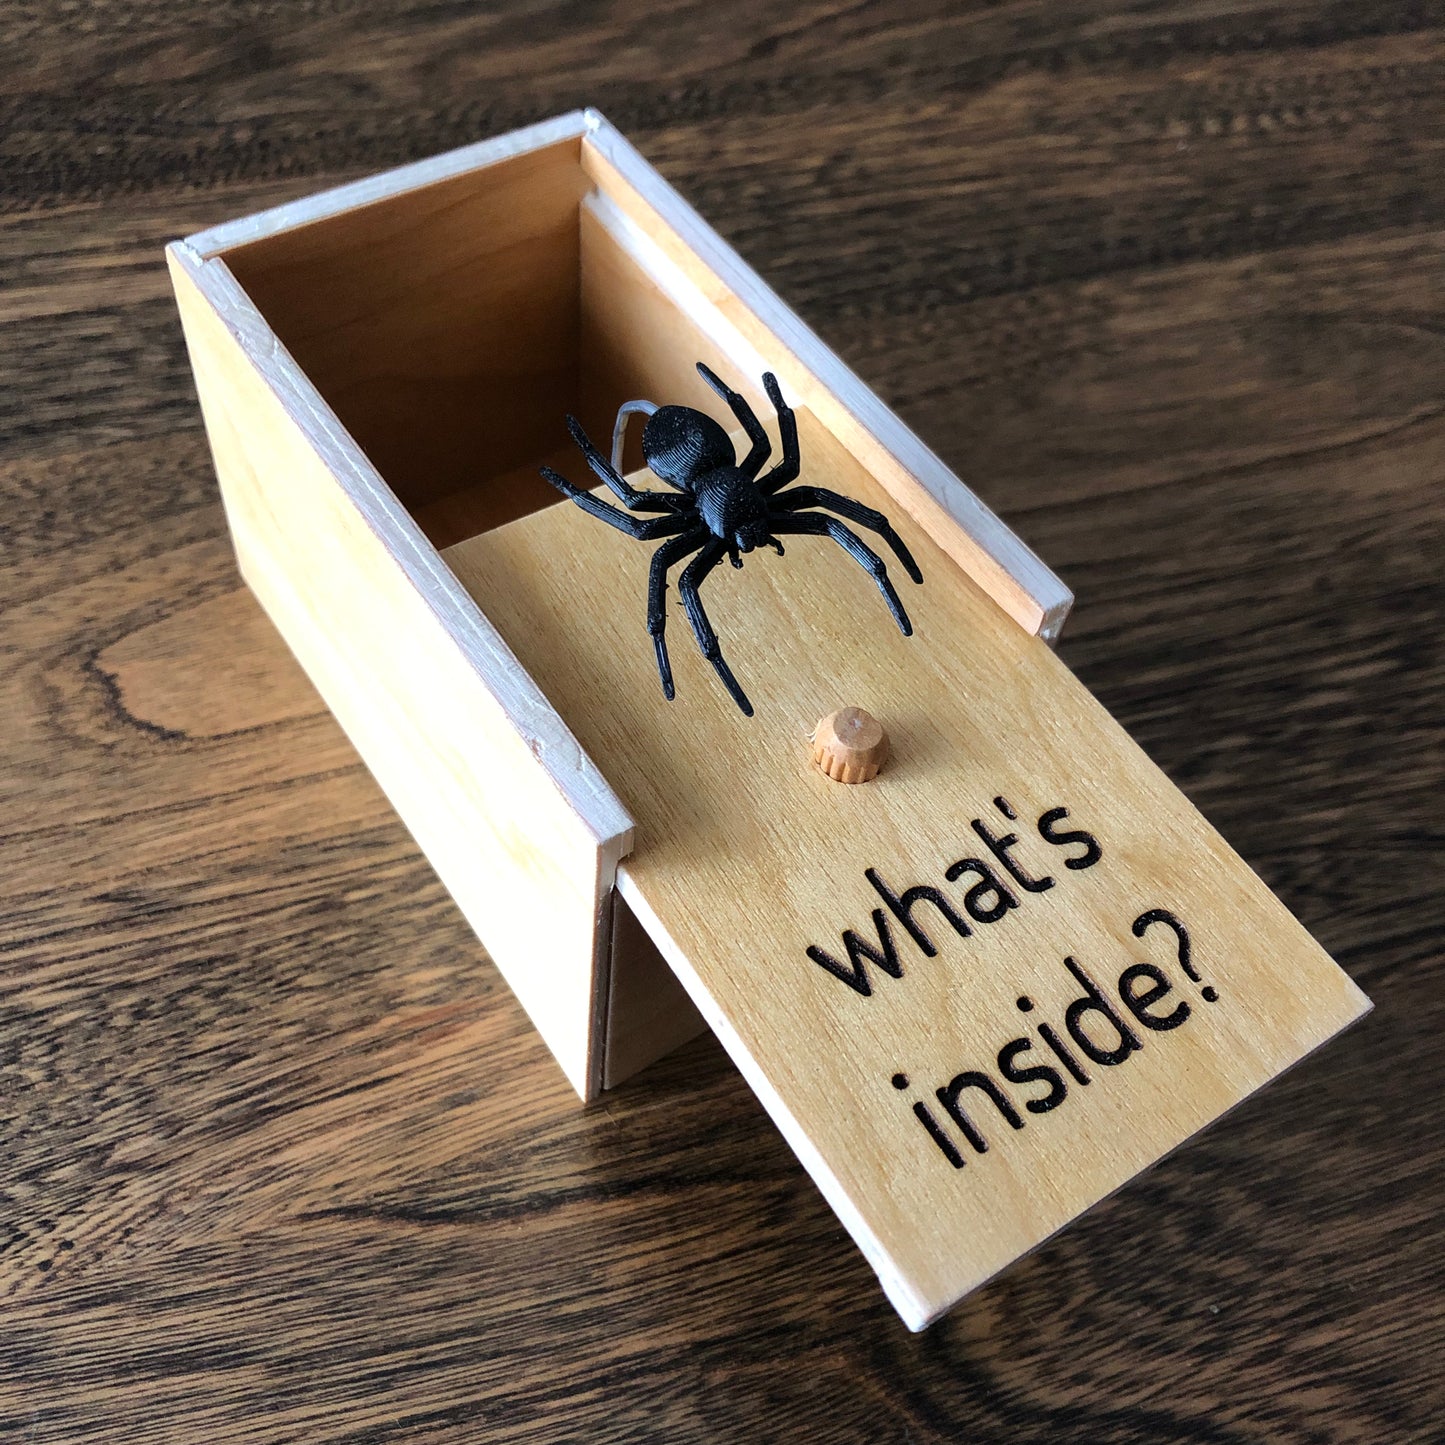 Spider Scare Box